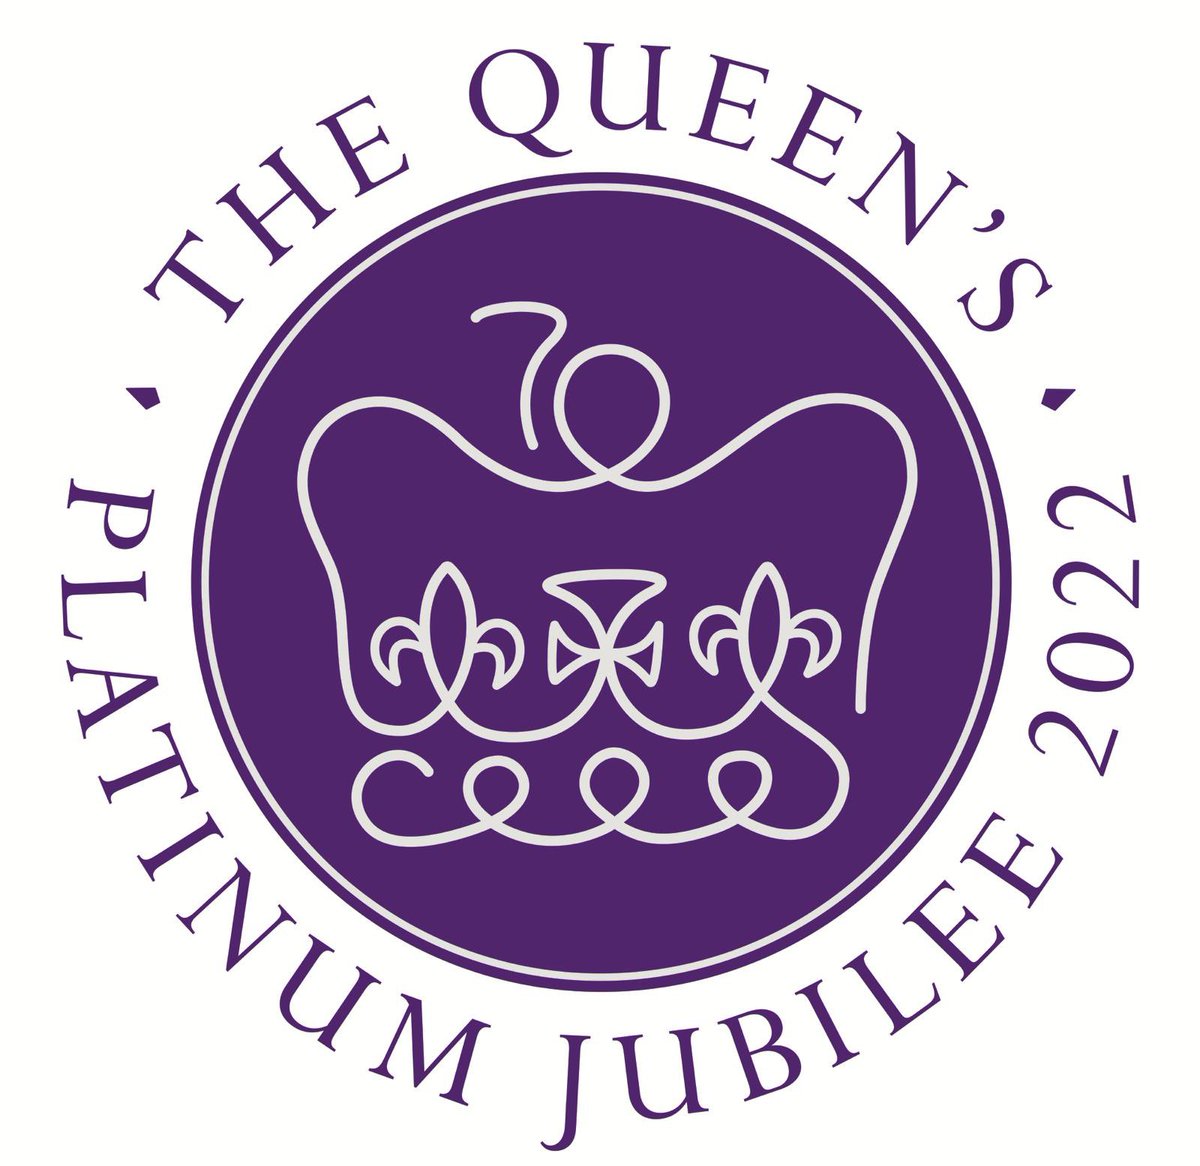 Queens Platinum Jubilee – “Big Lunch” on Westbridge Park